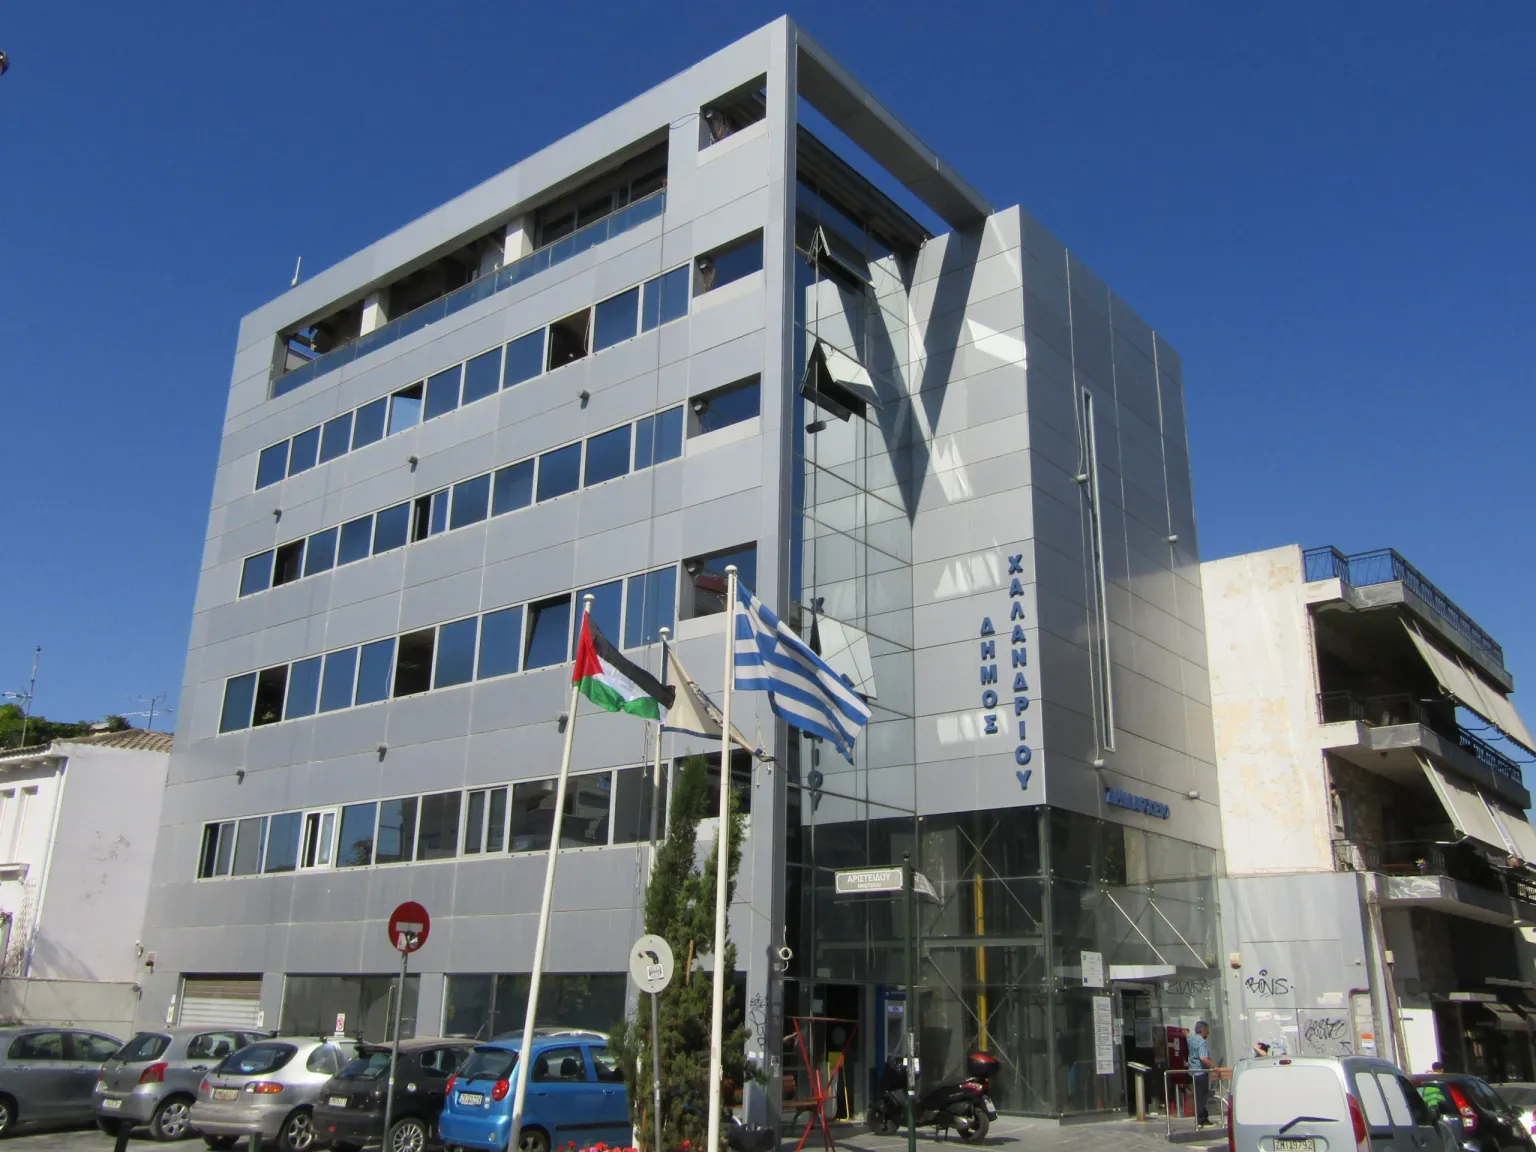 ΑΣΕΠ: Προσλήψεις στον δήμο Χαλανδρίου - Ειδικότητες και διάρκεια σύμβασης